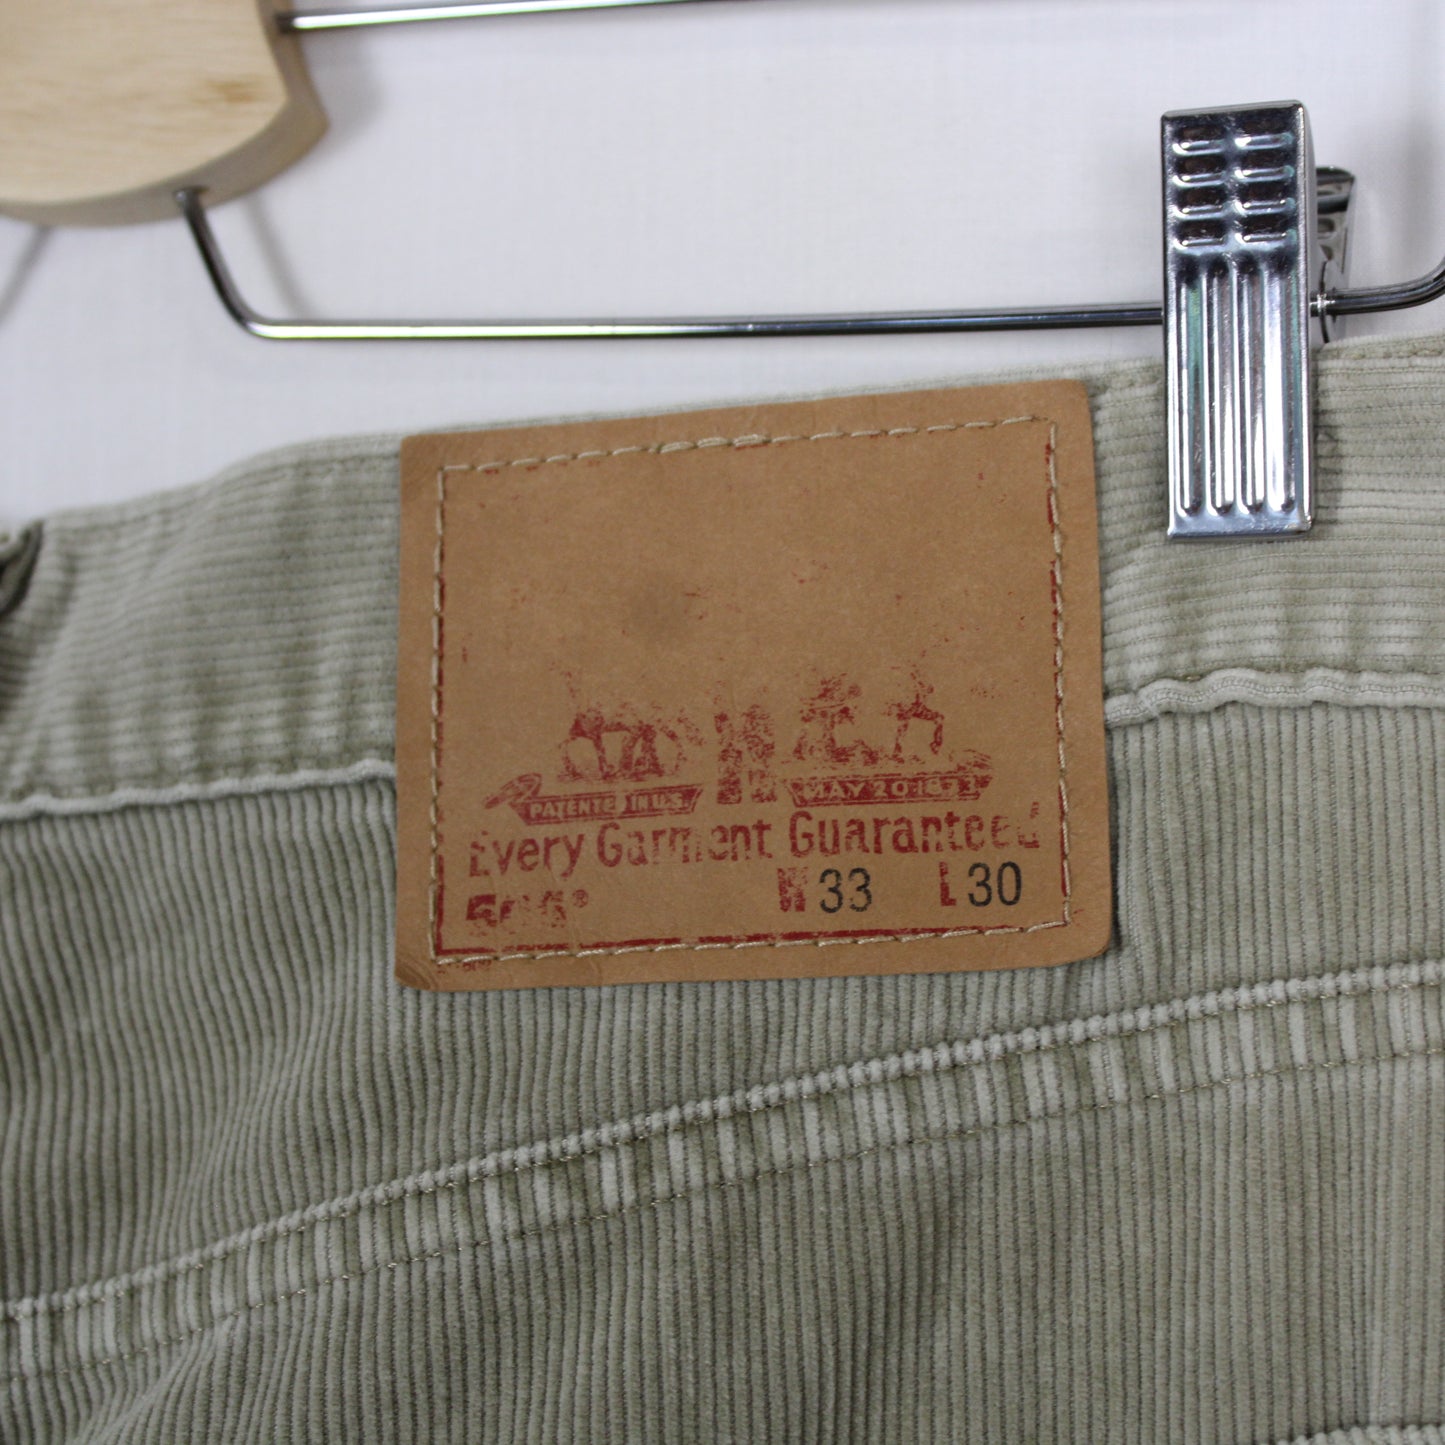 Vintage Levi's 506 Corduroy Pants - 33x30